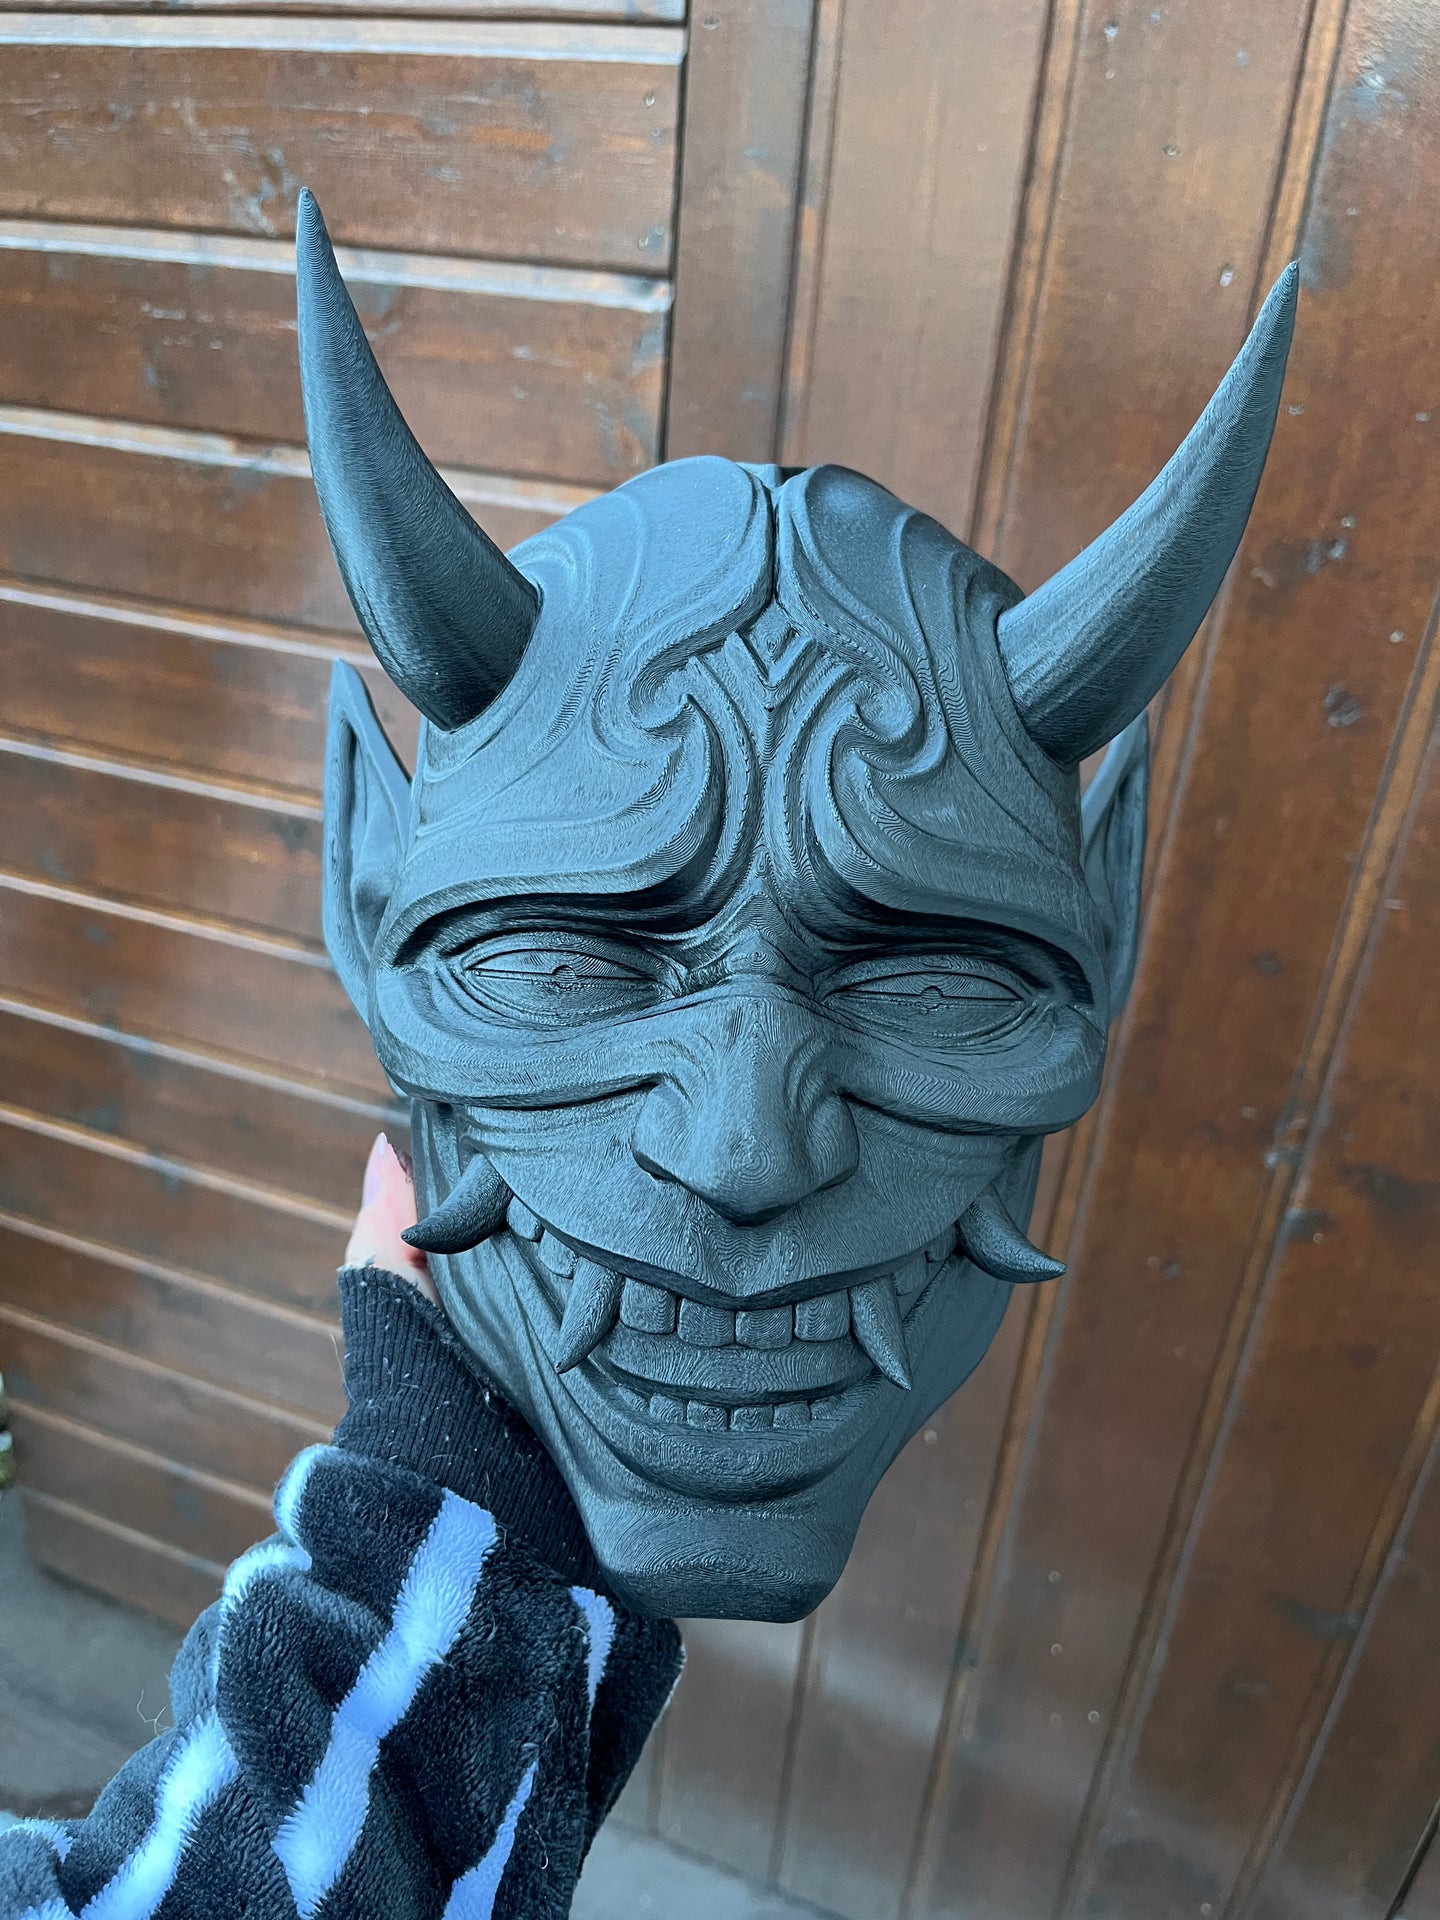 Decorative Oni mask - raw